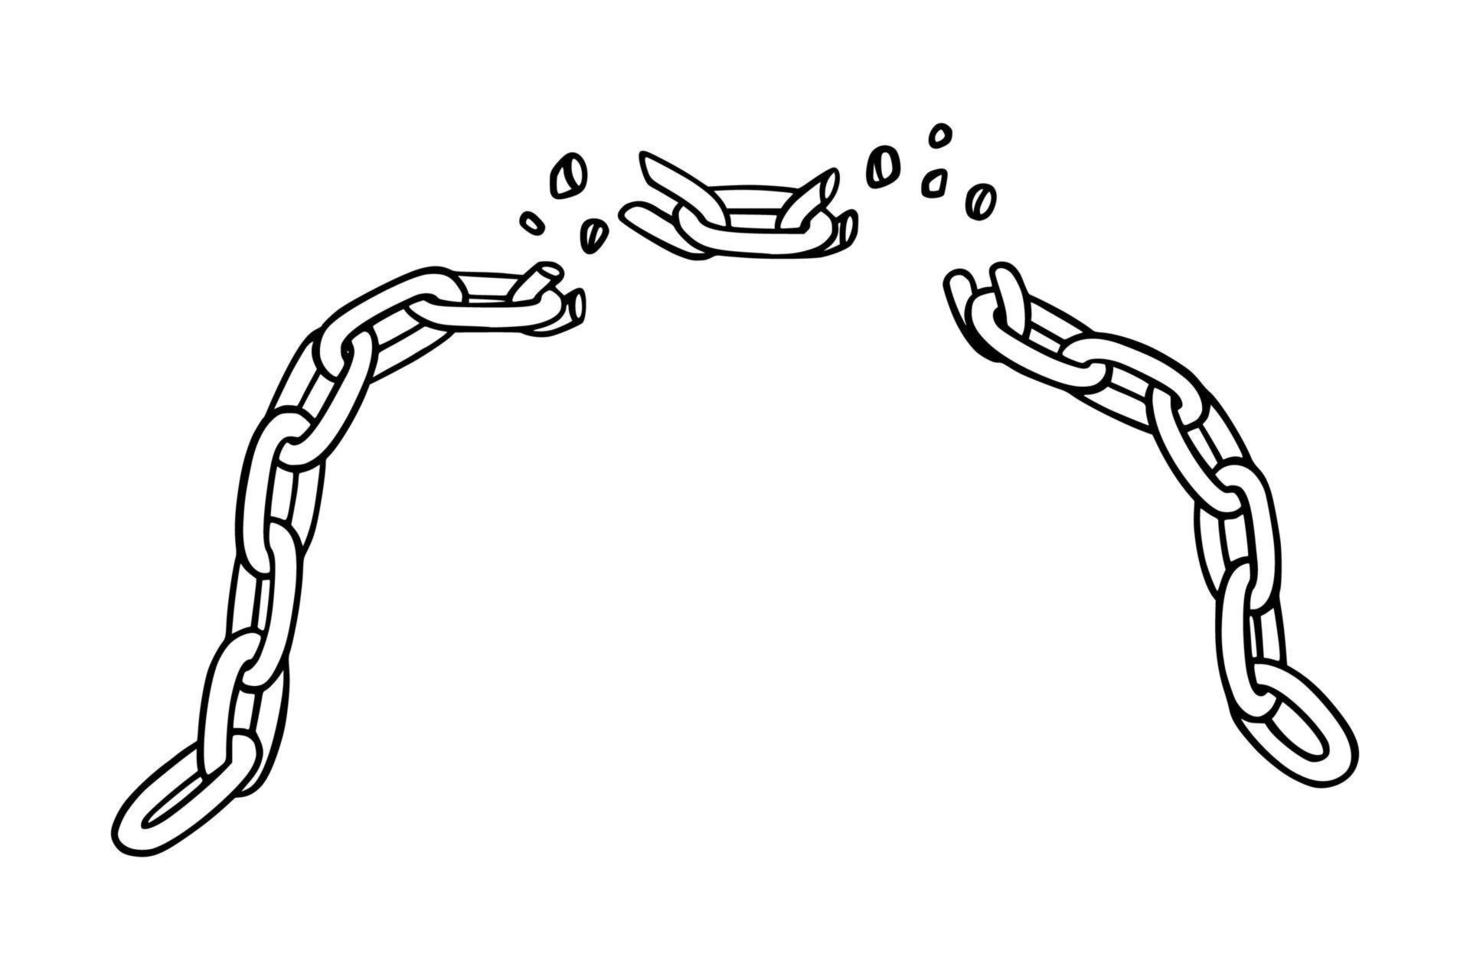 bruten kedja med splittras som symbol av styrka och enhet. skiss av metall kedjor. vektor illustration